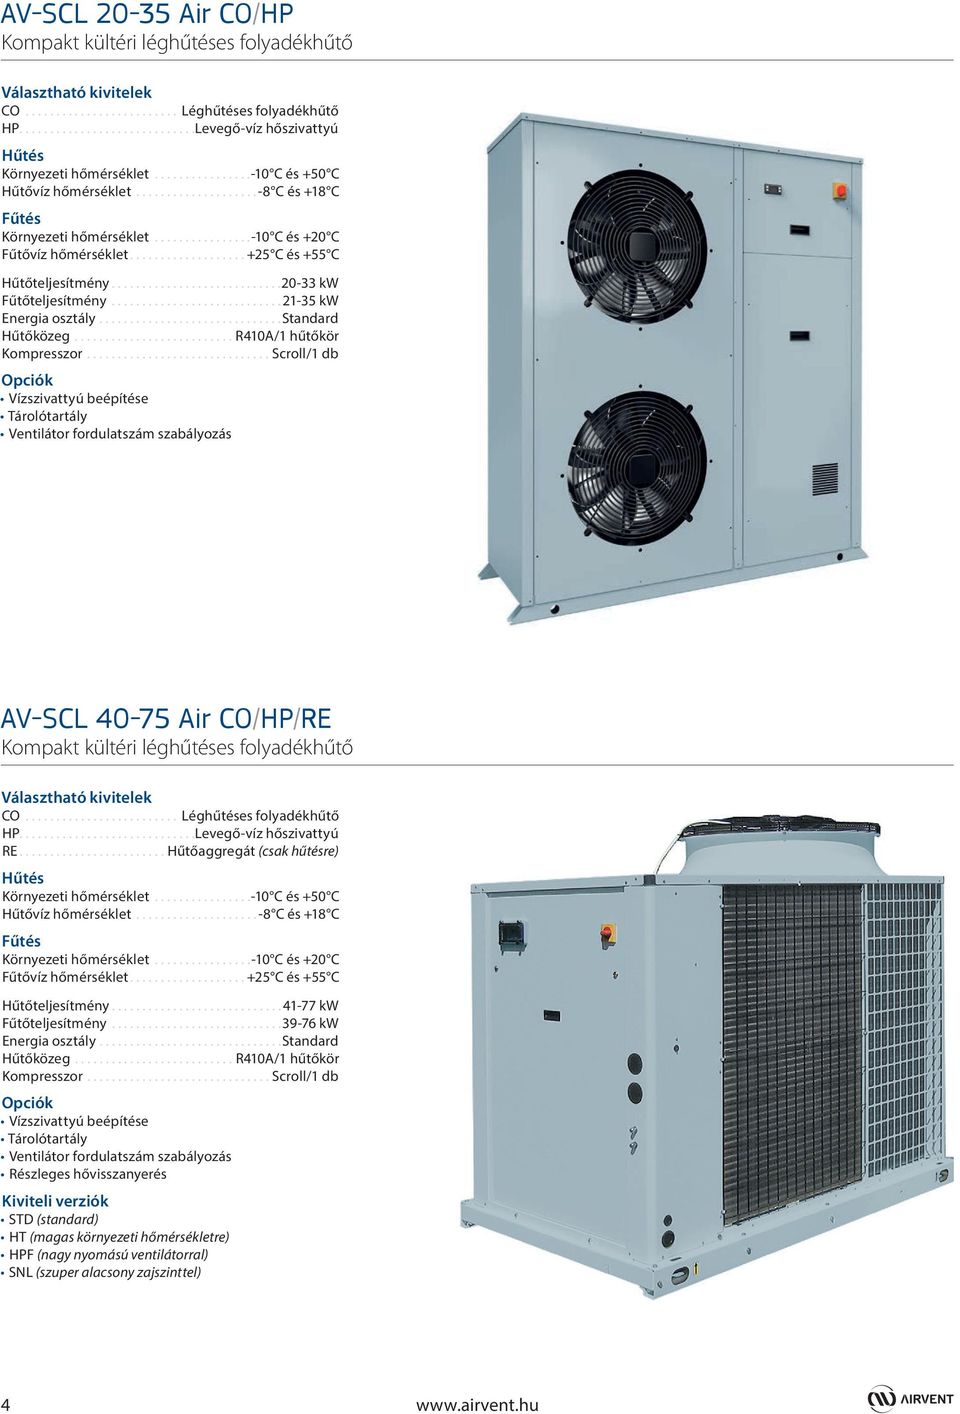 ..21-35 kw Energia osztály...standard Hűtőközeg...R410A/1 hűtőkör Kompresszor.